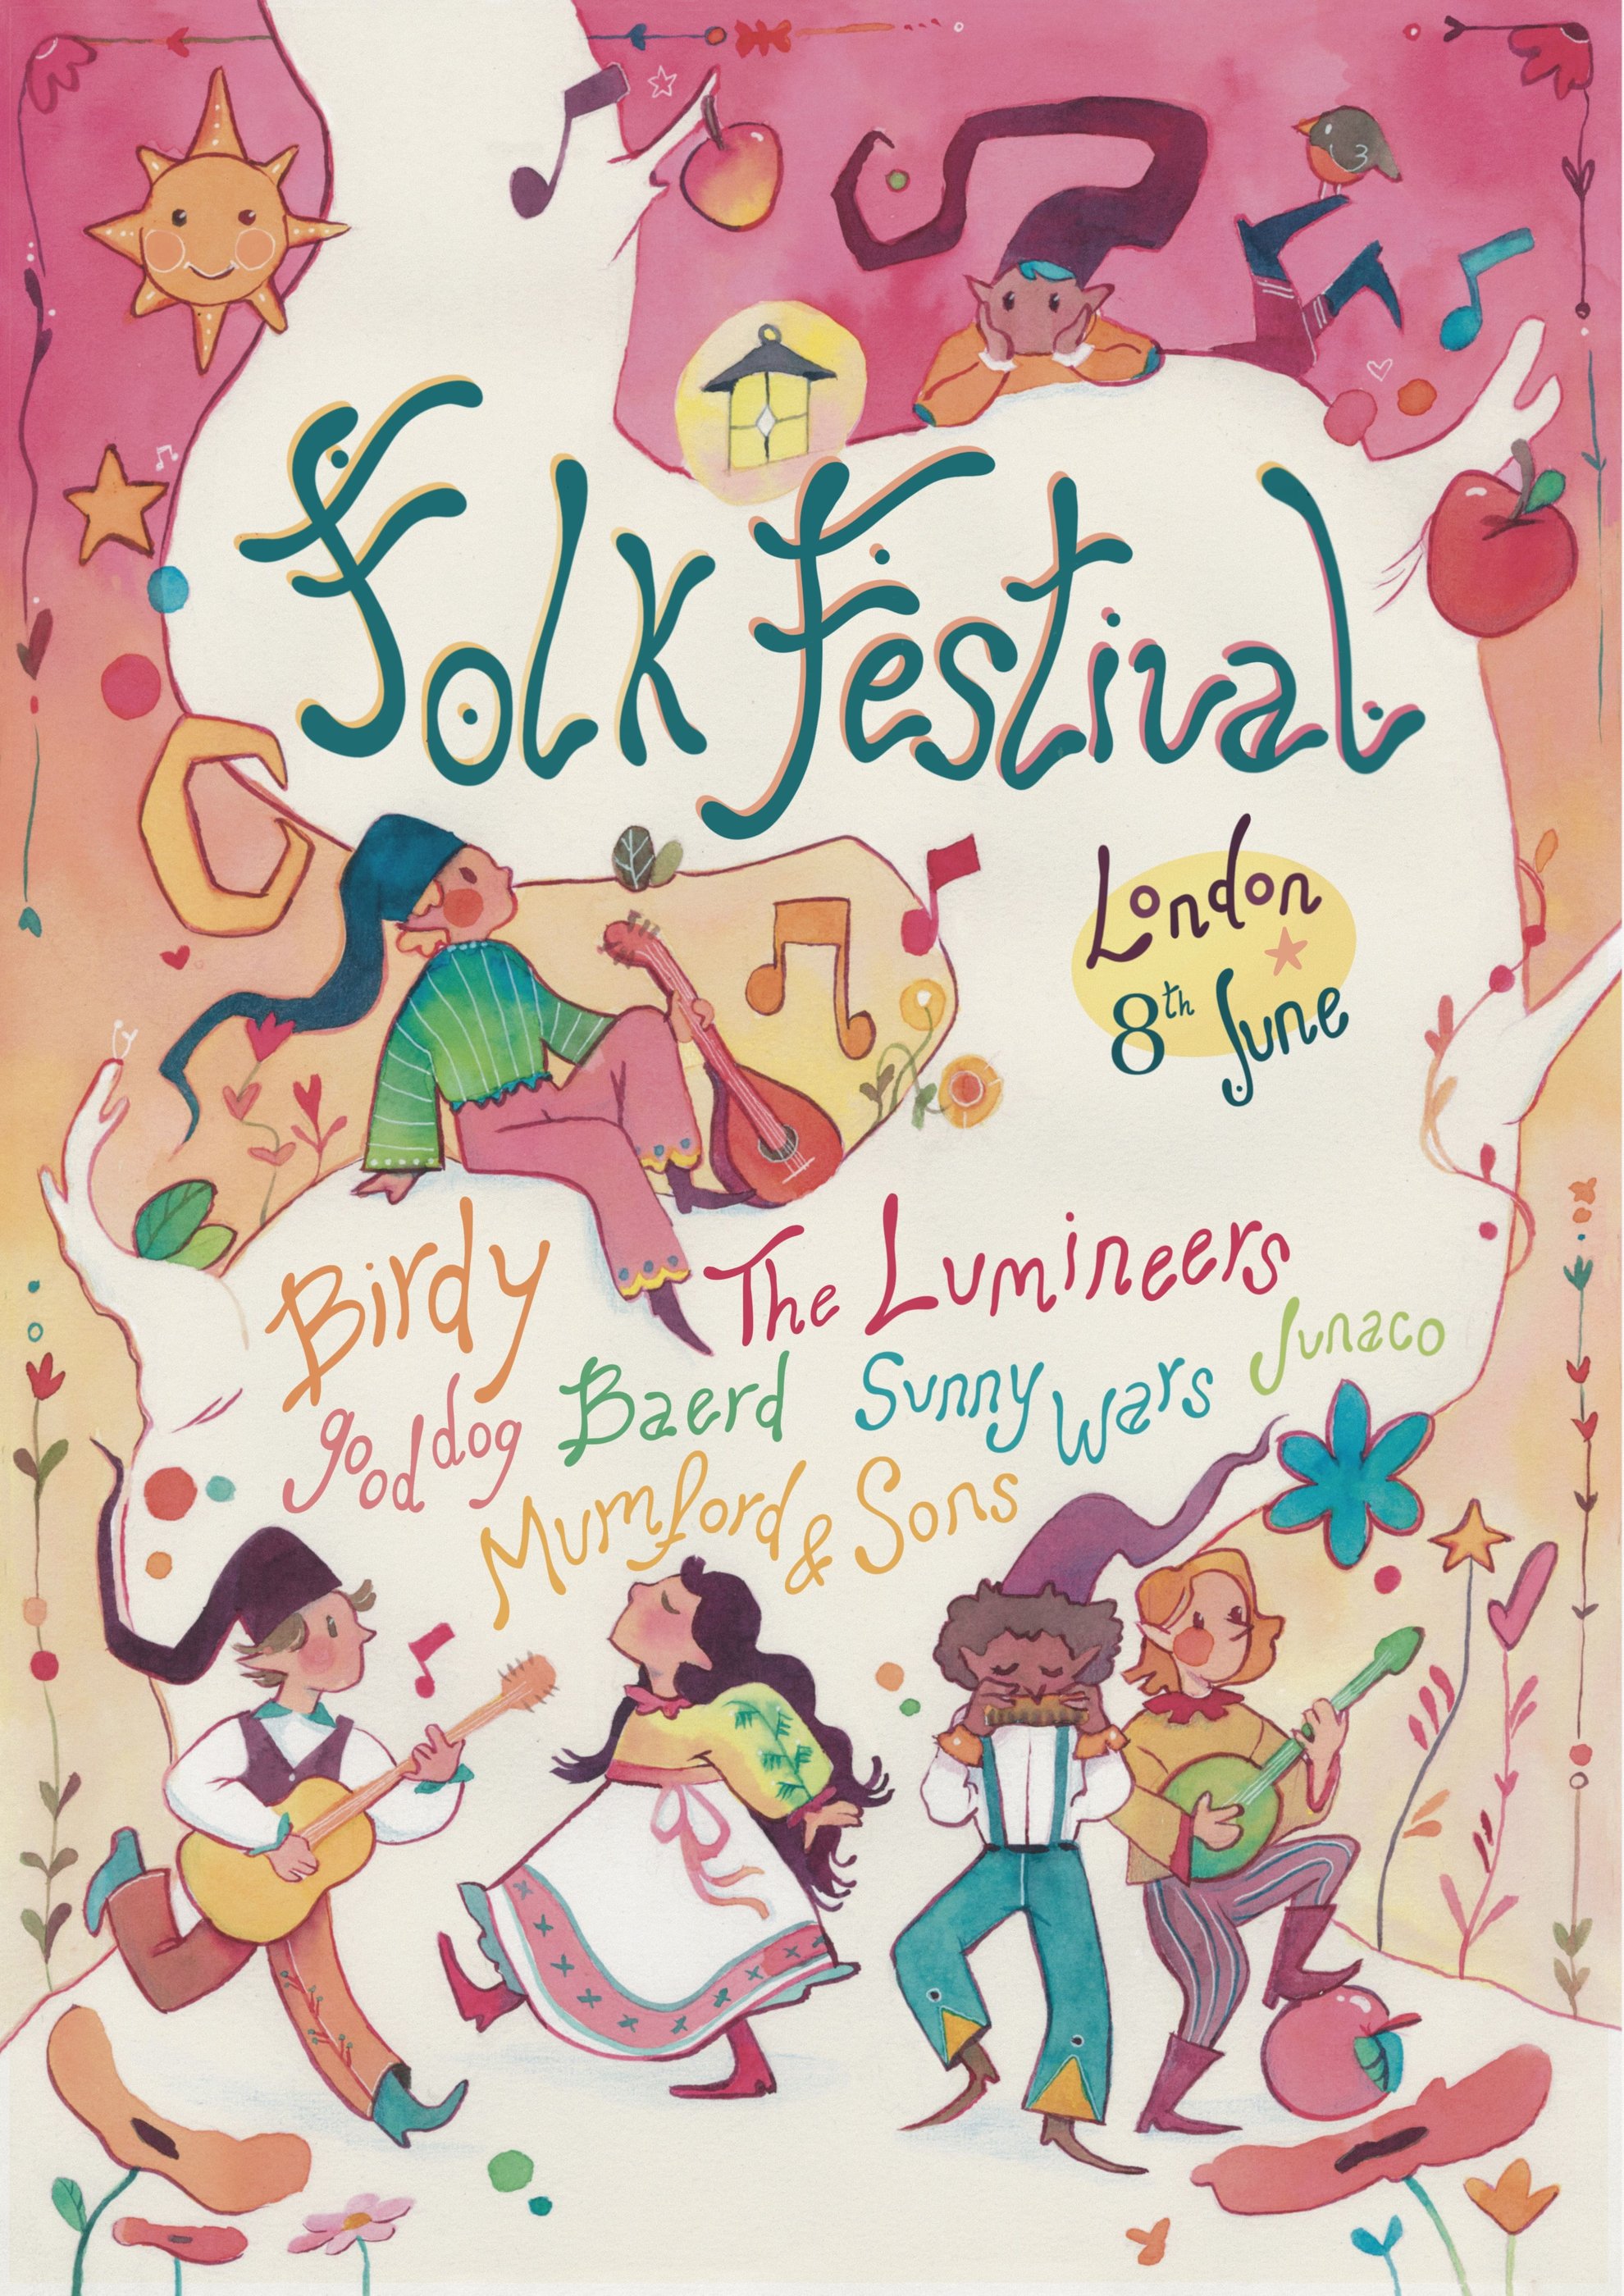 Affiche d'un festival fictif